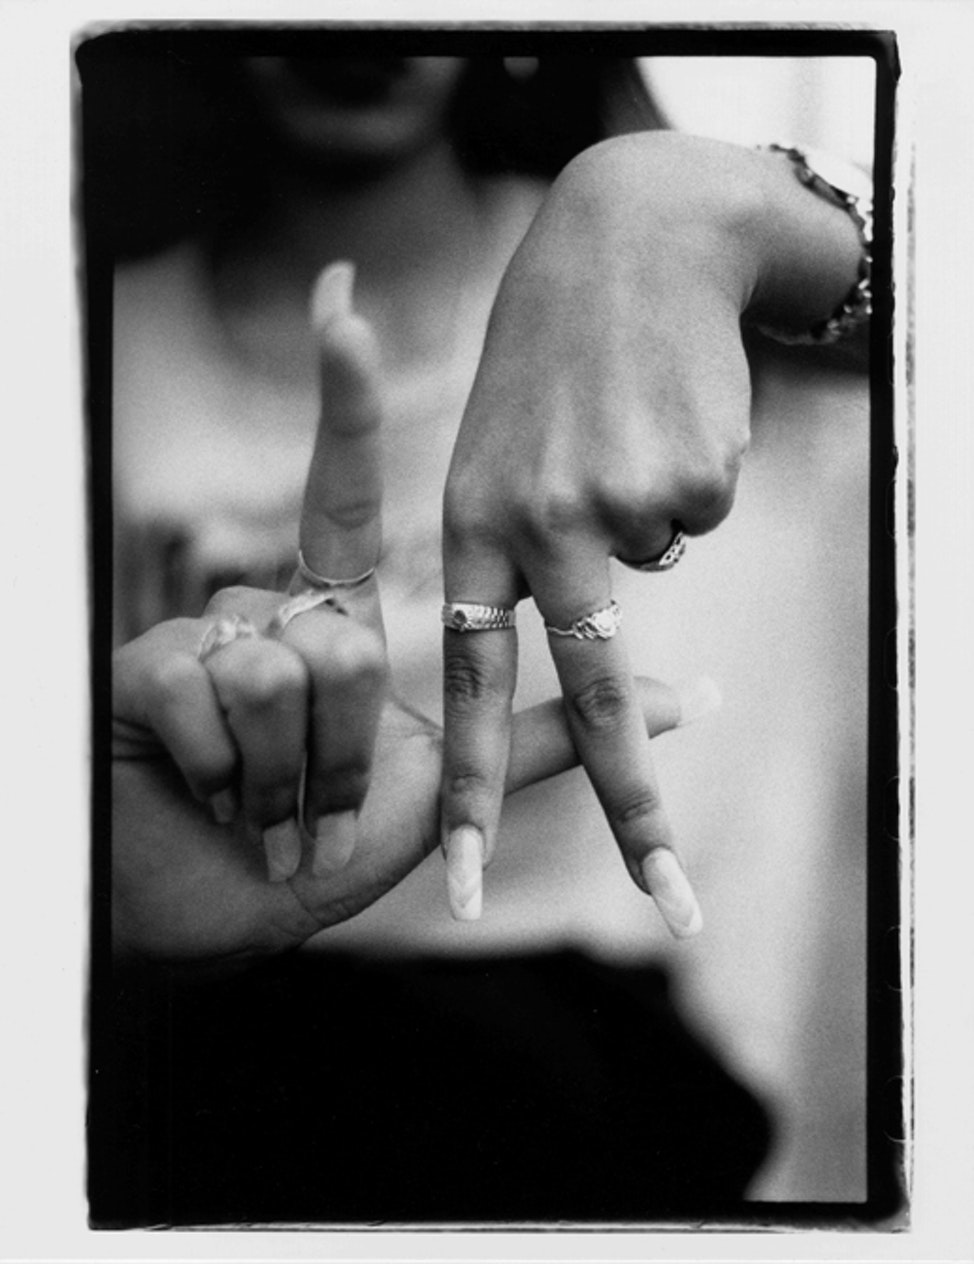 LA Hands - photo by Estevan Oriol